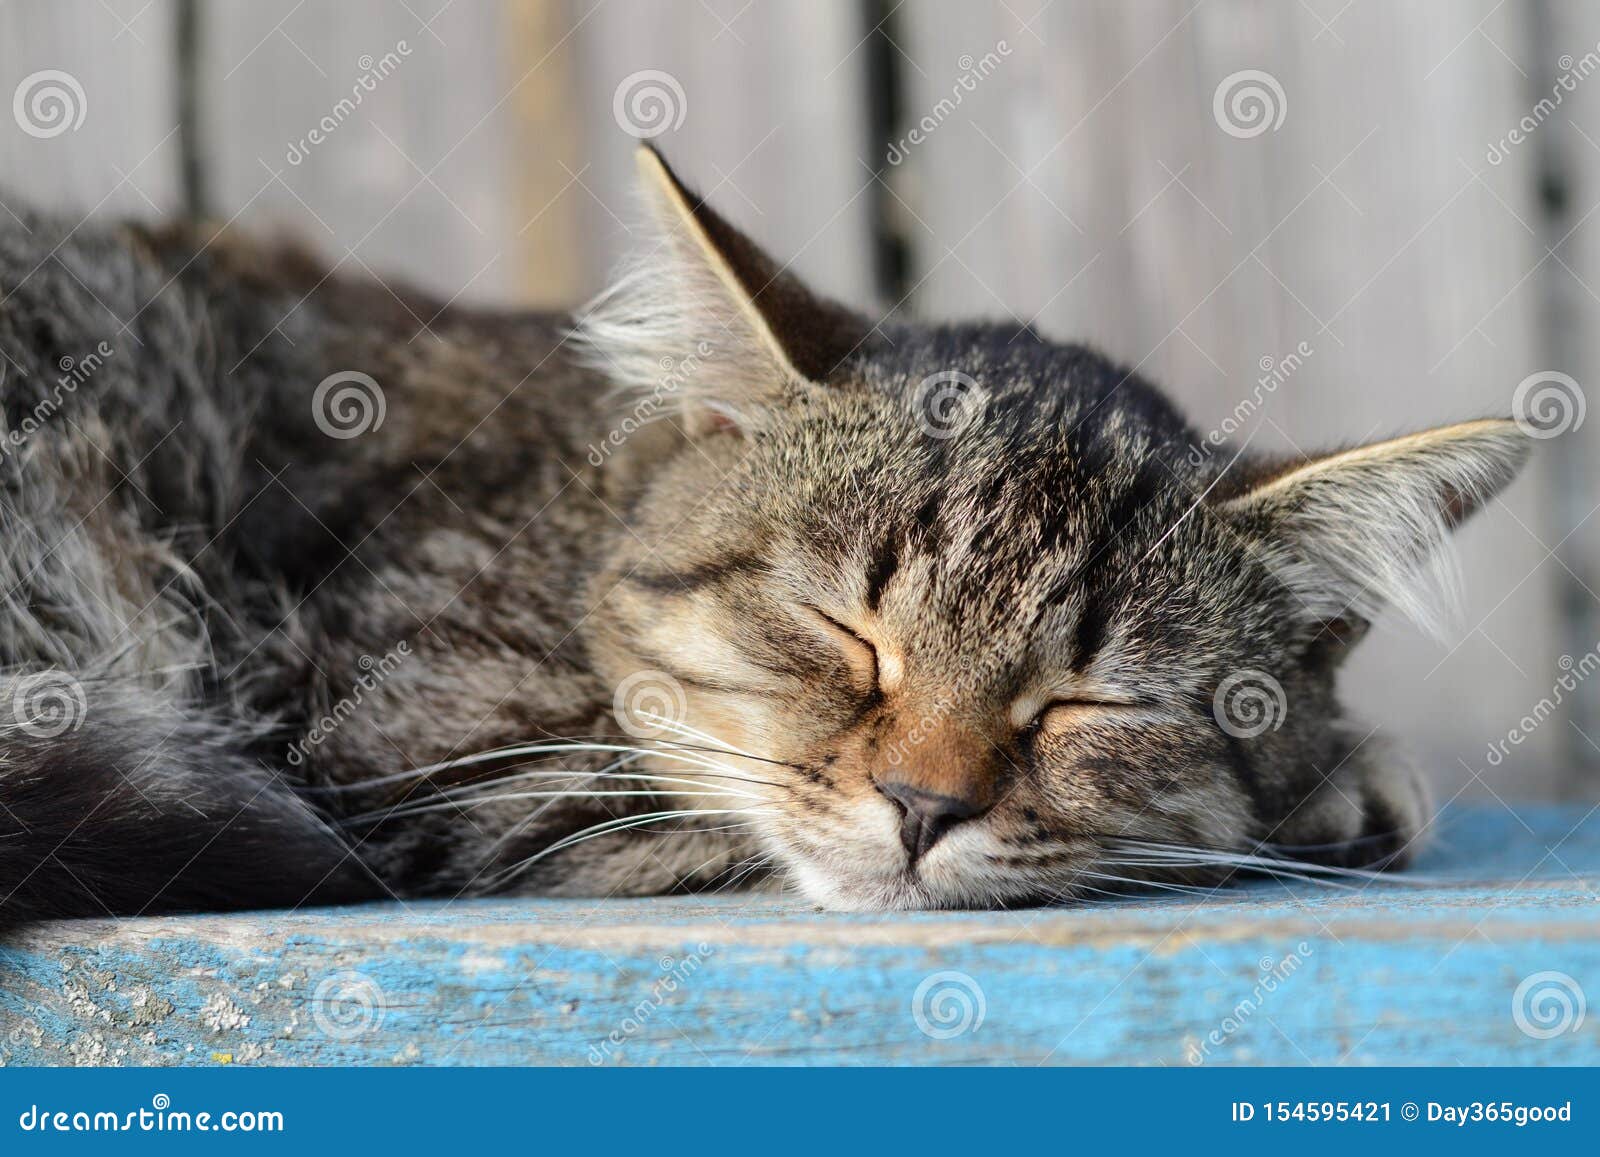 Sleeping Tabby Cat. Peaceful Deep Sleep. Rural Gray Cat Sleeping Near